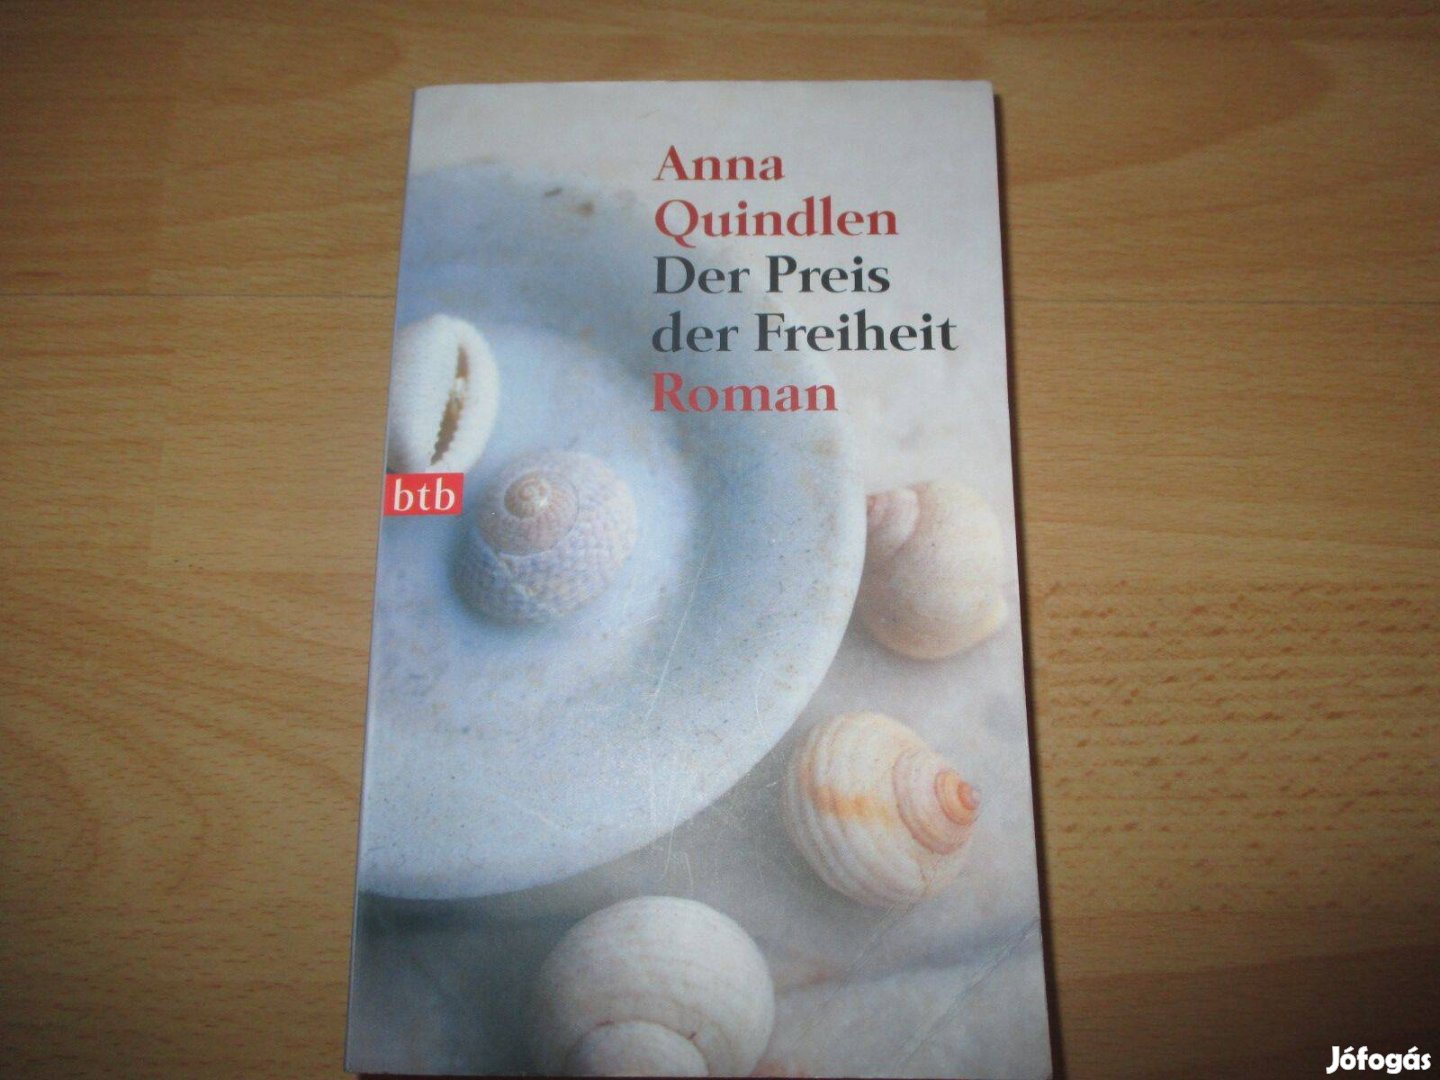 5 db német nyelvű romantikus könyv regény együtt 4000 Ft